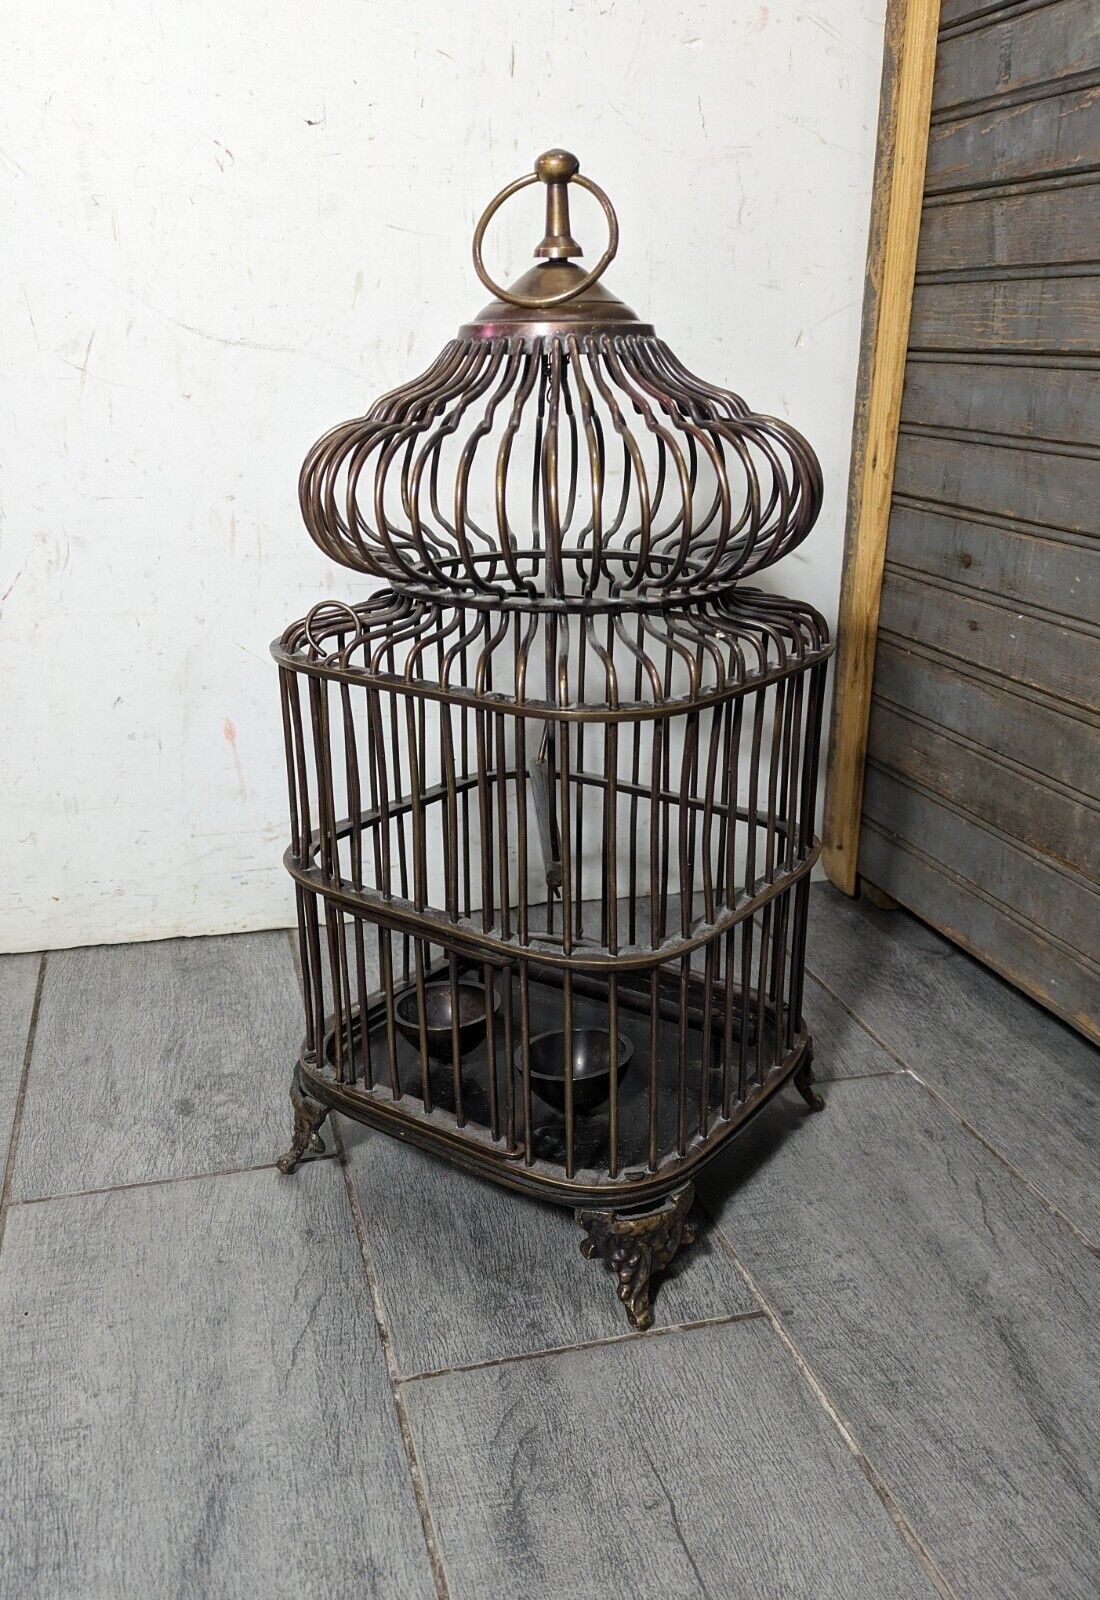 Vintage Brass Decorative Birdcage Birdhouse - Wire Dome - Victorian